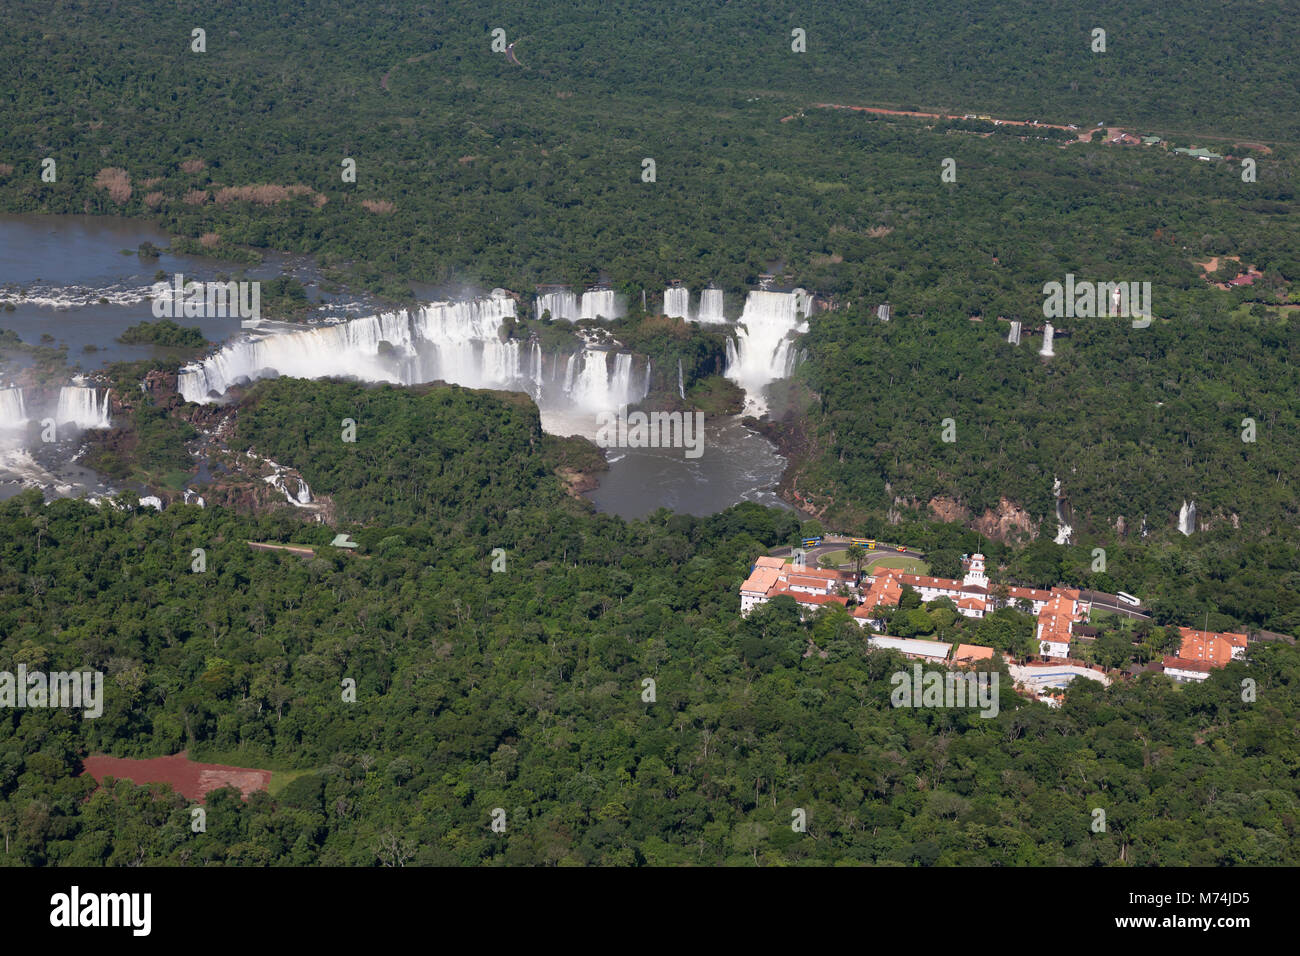 Panorama de l'été, les chutes d'Iguazu antenne UNESCO World Heritage site, merveilles naturelles du monde, Belmond Hotel Das Cataratas, Amérique du Sud Banque D'Images